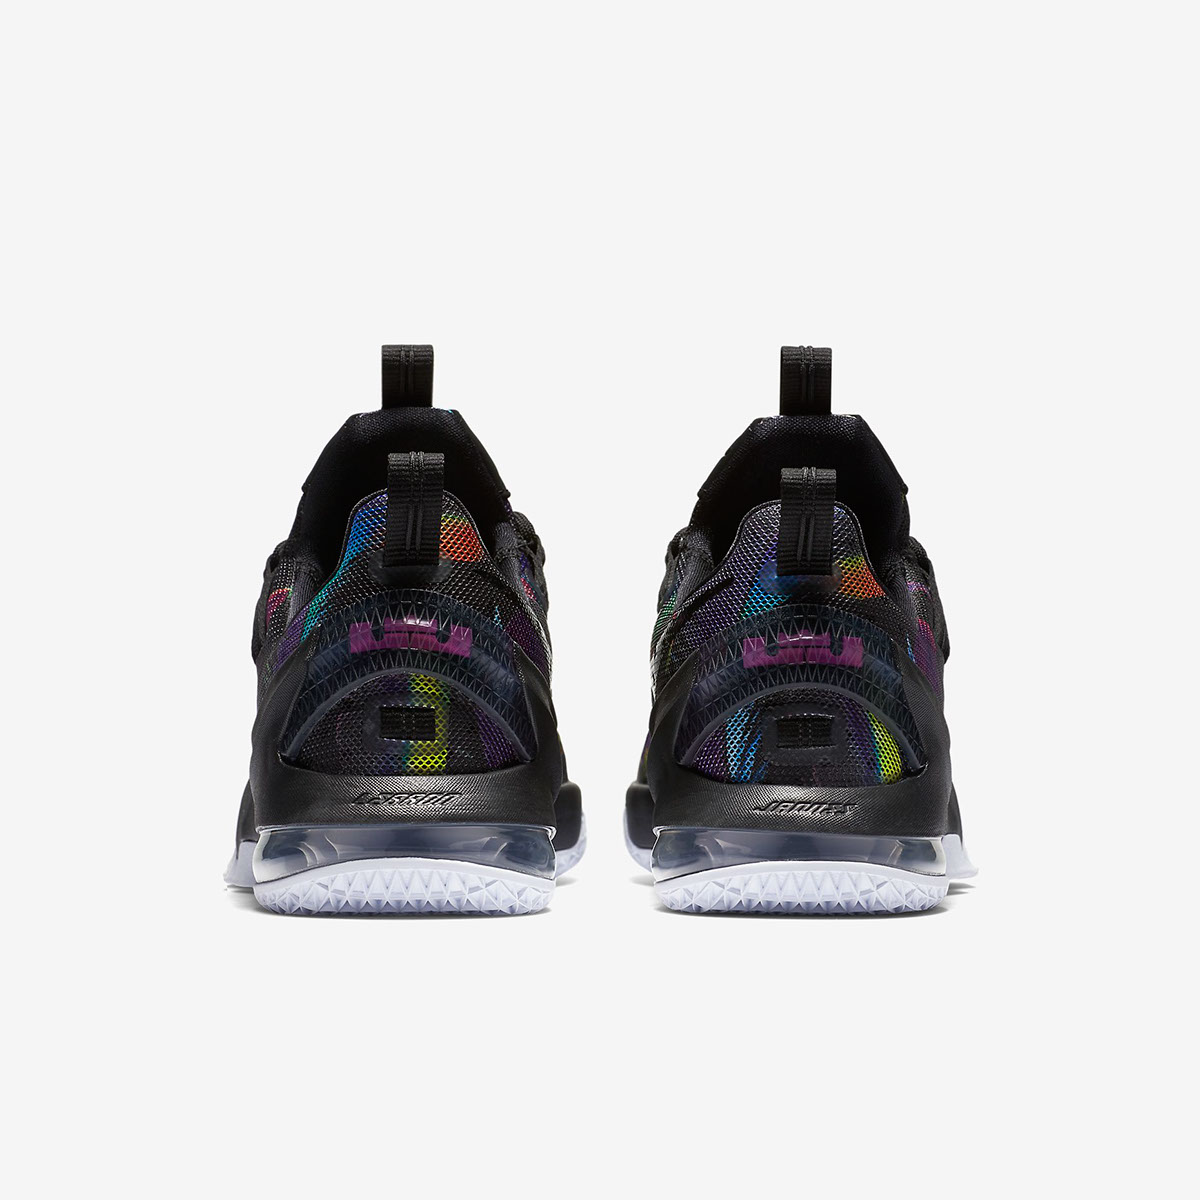 Nike: Shoes of Paradise